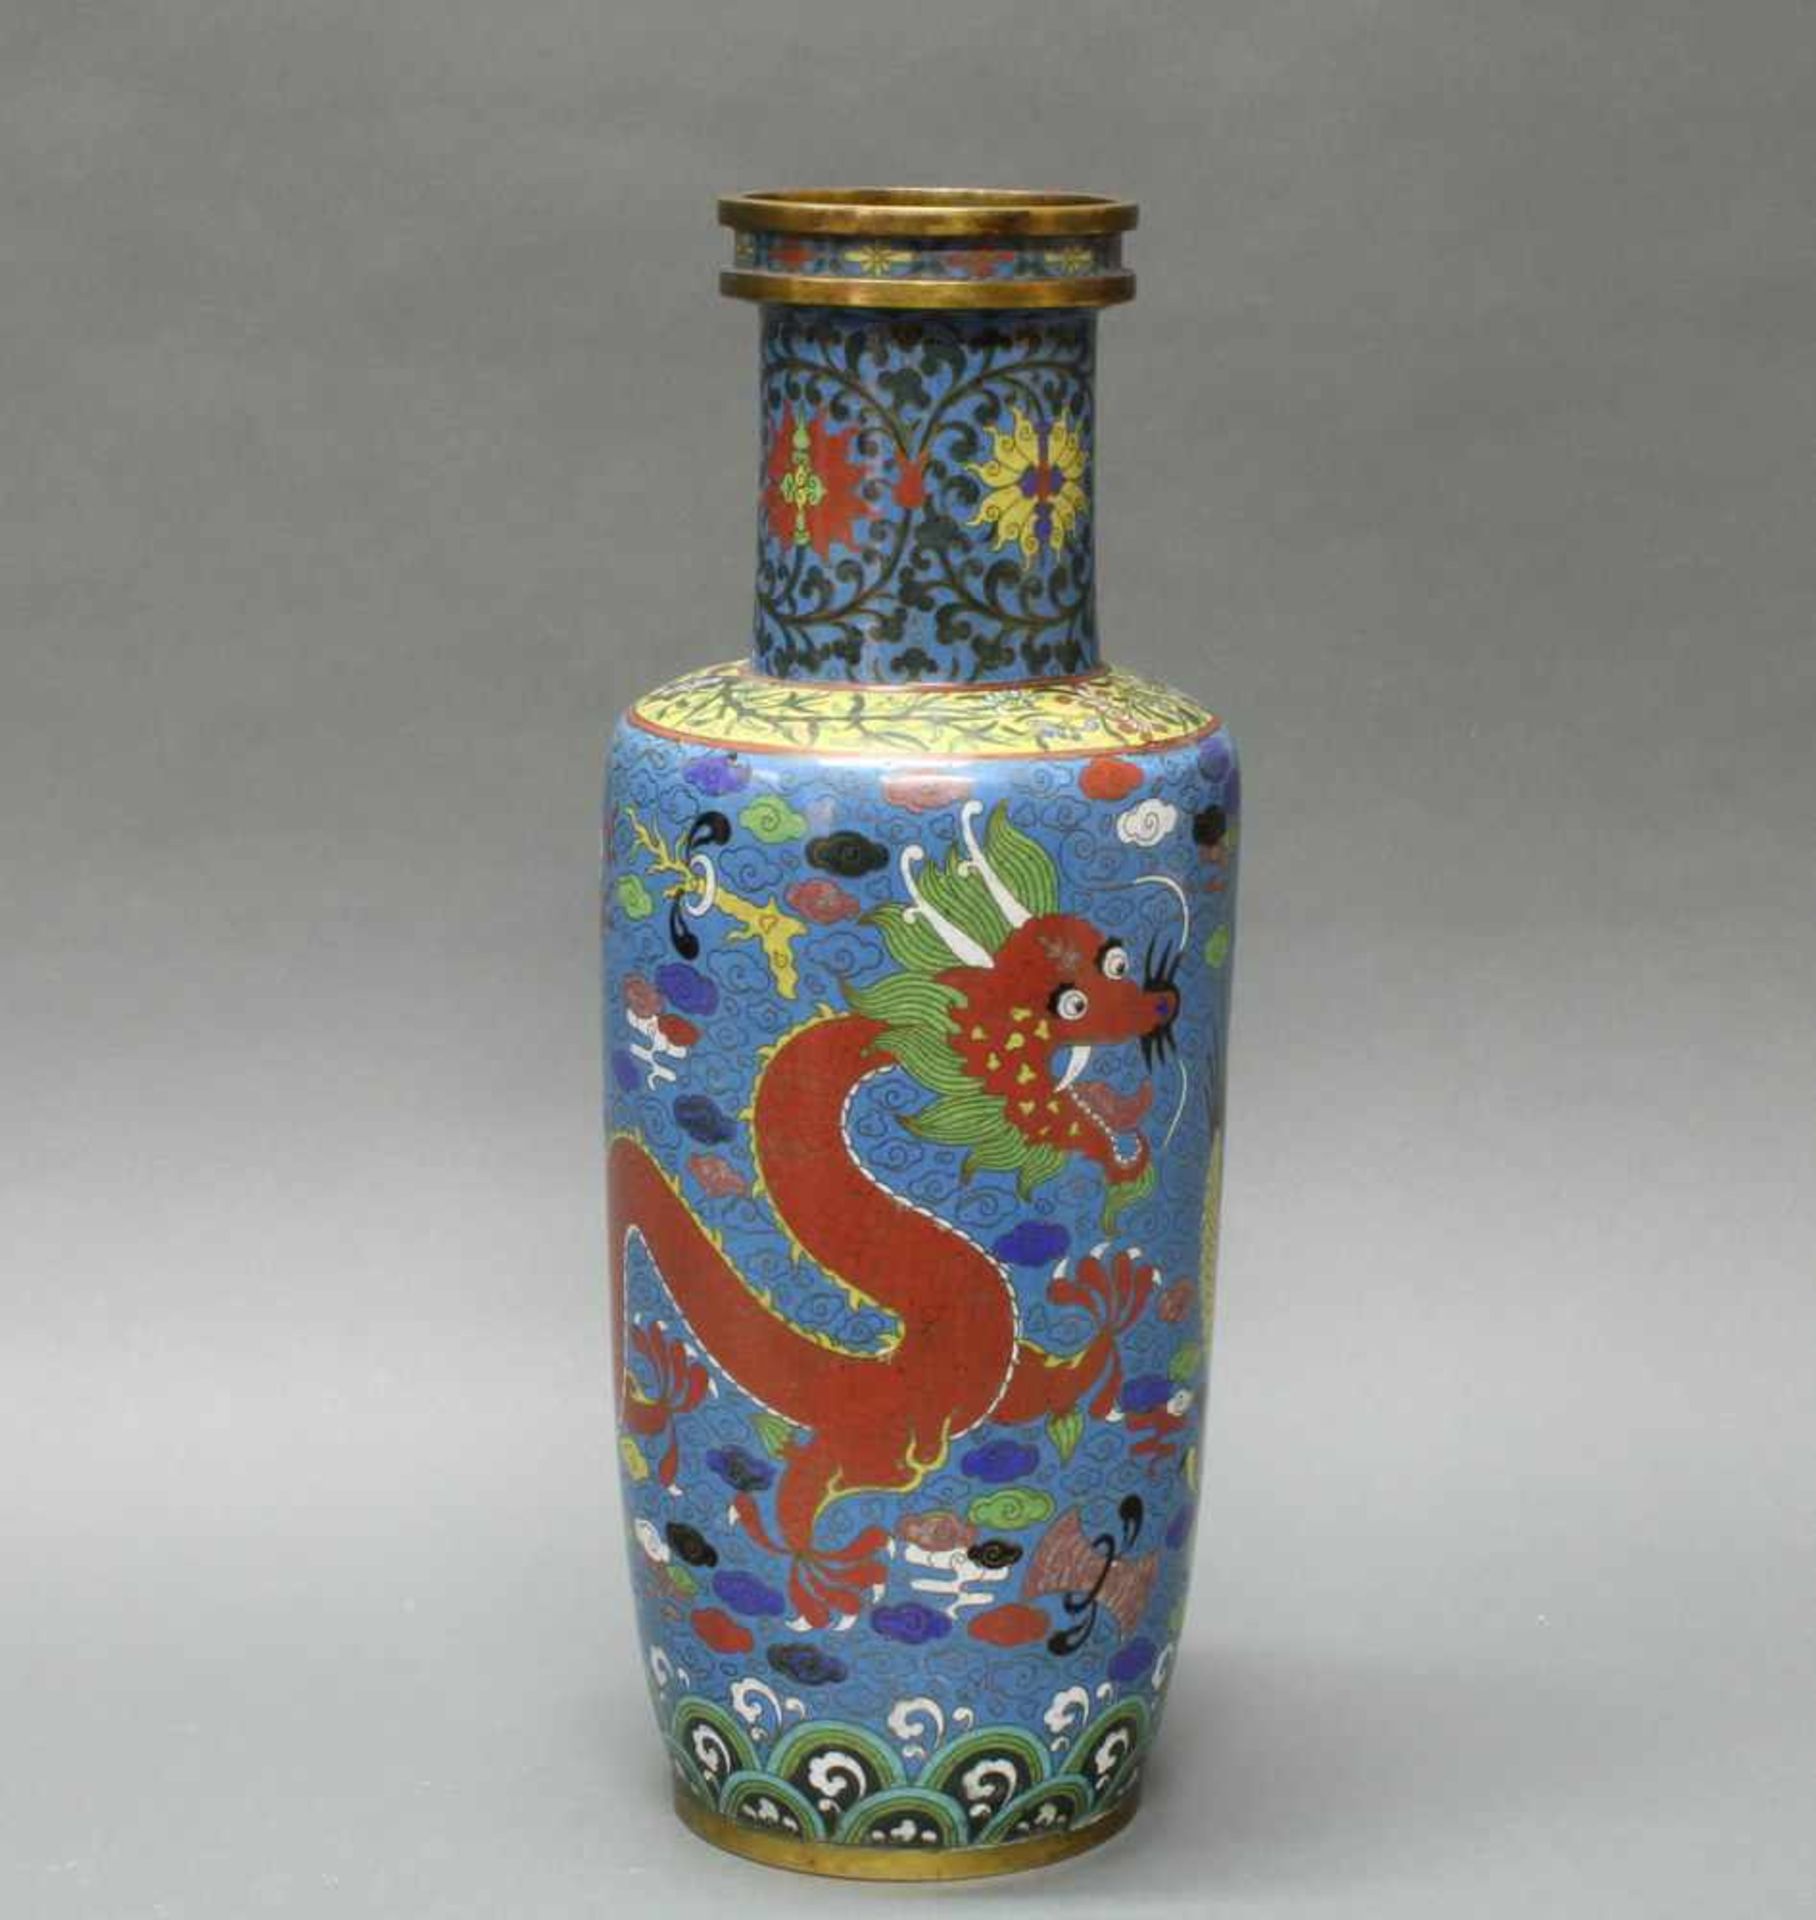 Vase, China, um 1900, Cloisonné, um den zylindrischen Korpus ein gelber und ein roter Drache - Bild 3 aus 4